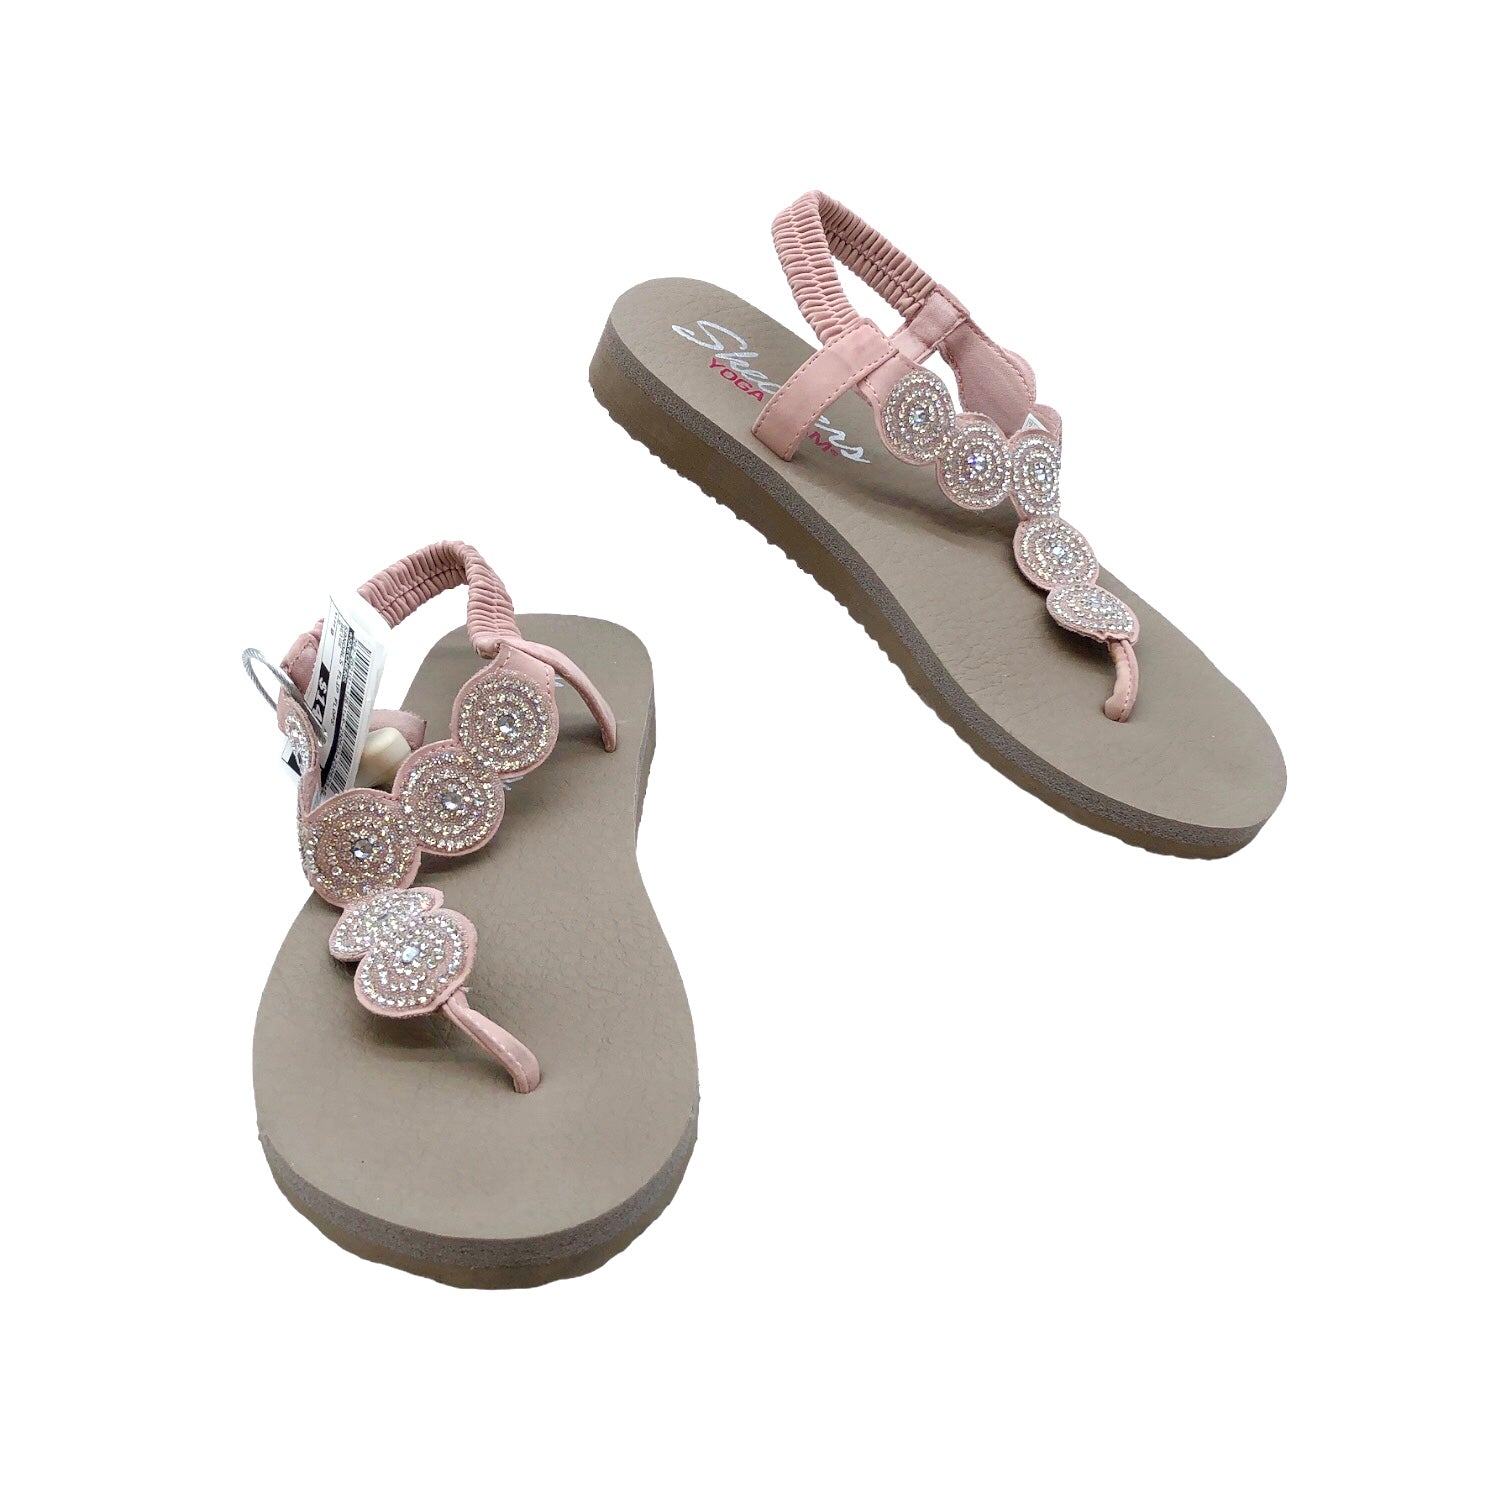 Sandals Flip Flops By Skechers Size: 9 – Clothes Mentor Arlington